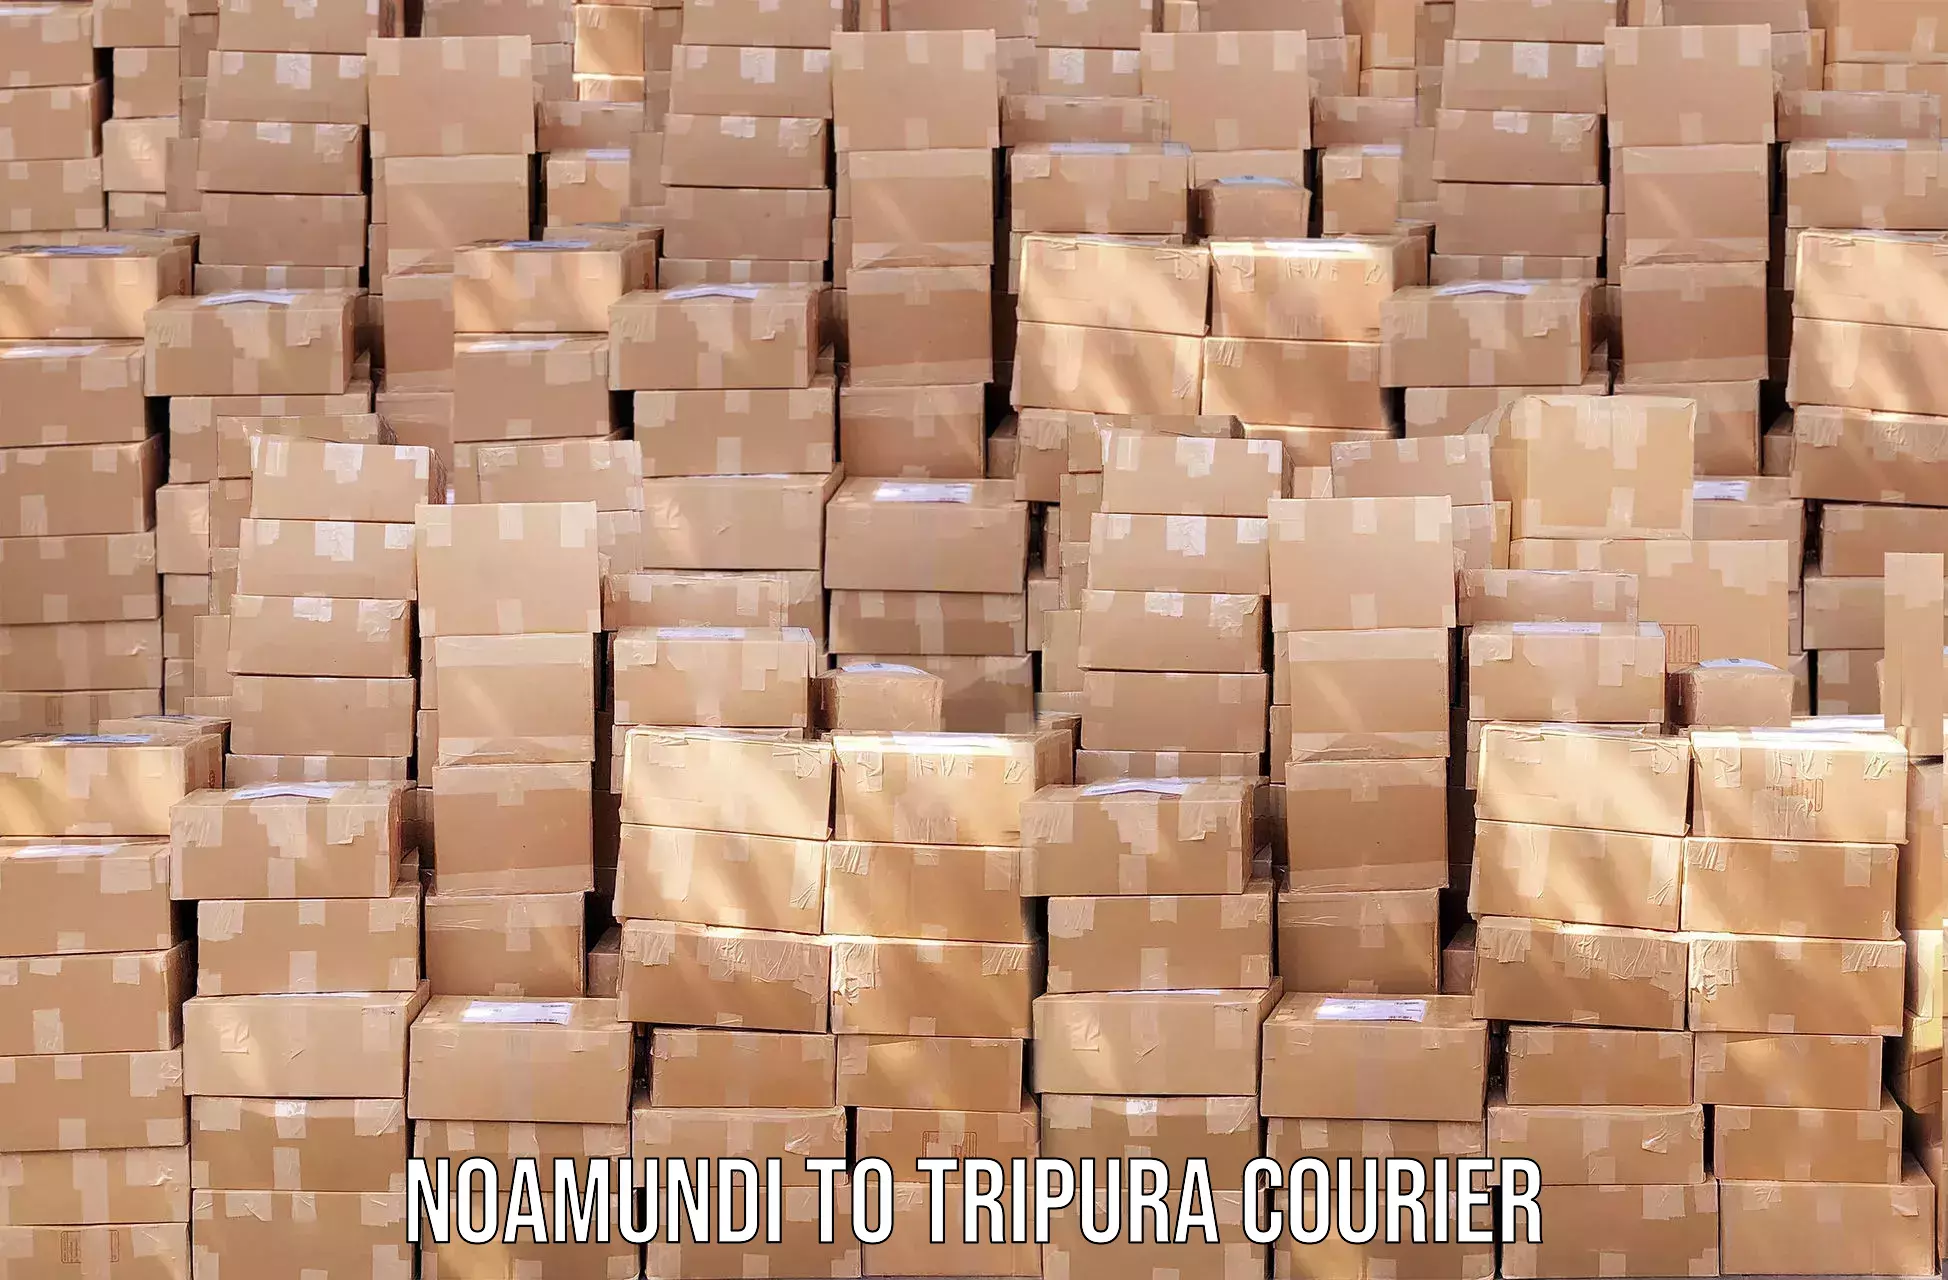 Efficient parcel service Noamundi to Khowai